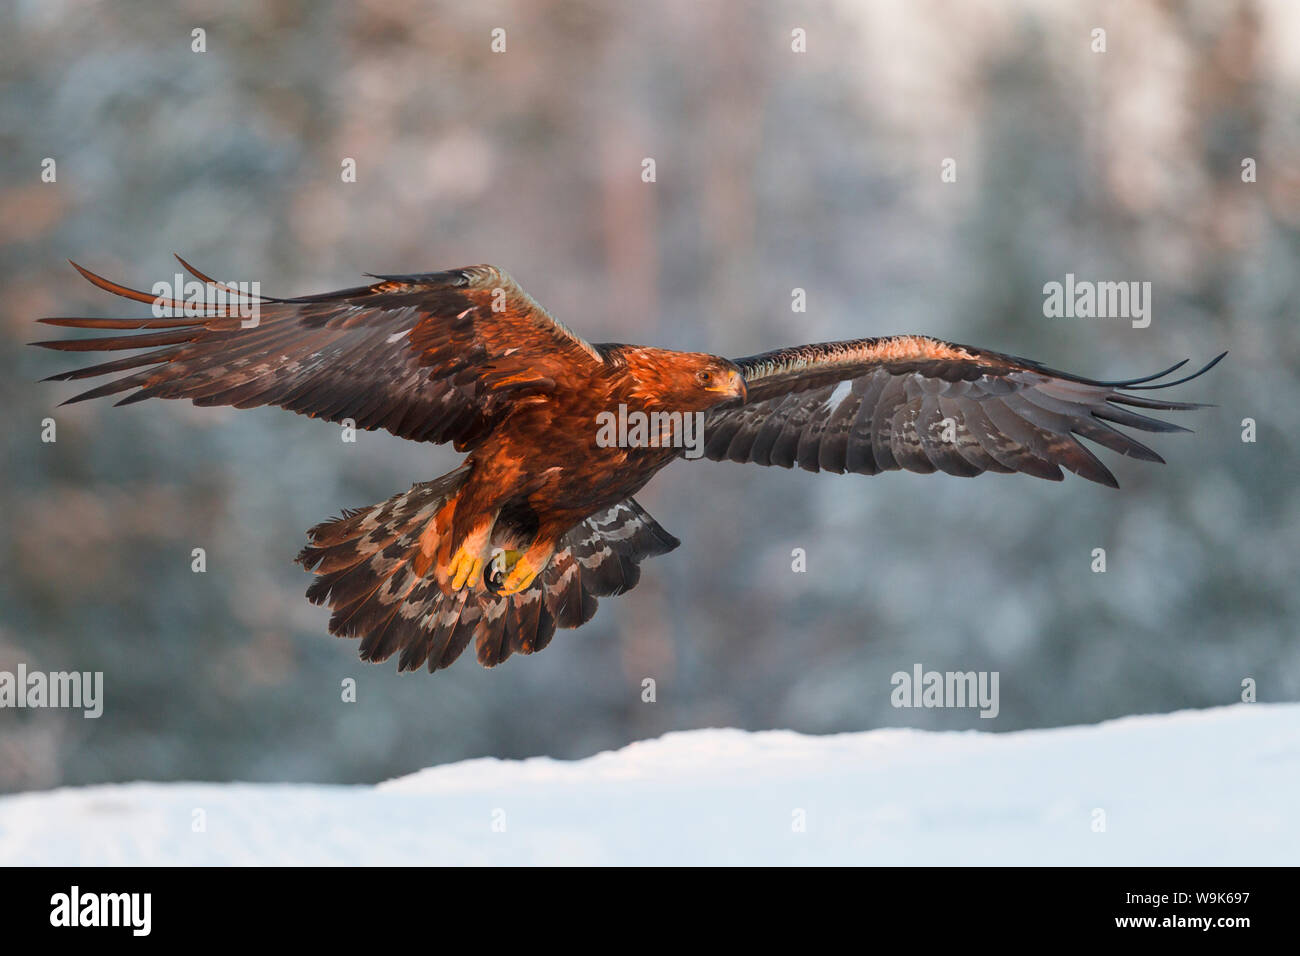 Aquila reale (Aquila chrysaetos) prende il volo in golden tardo pomeriggio di inverno di luce sopra la neve, la taiga Forest, Finlandia e Scandinavia, Europa Foto Stock